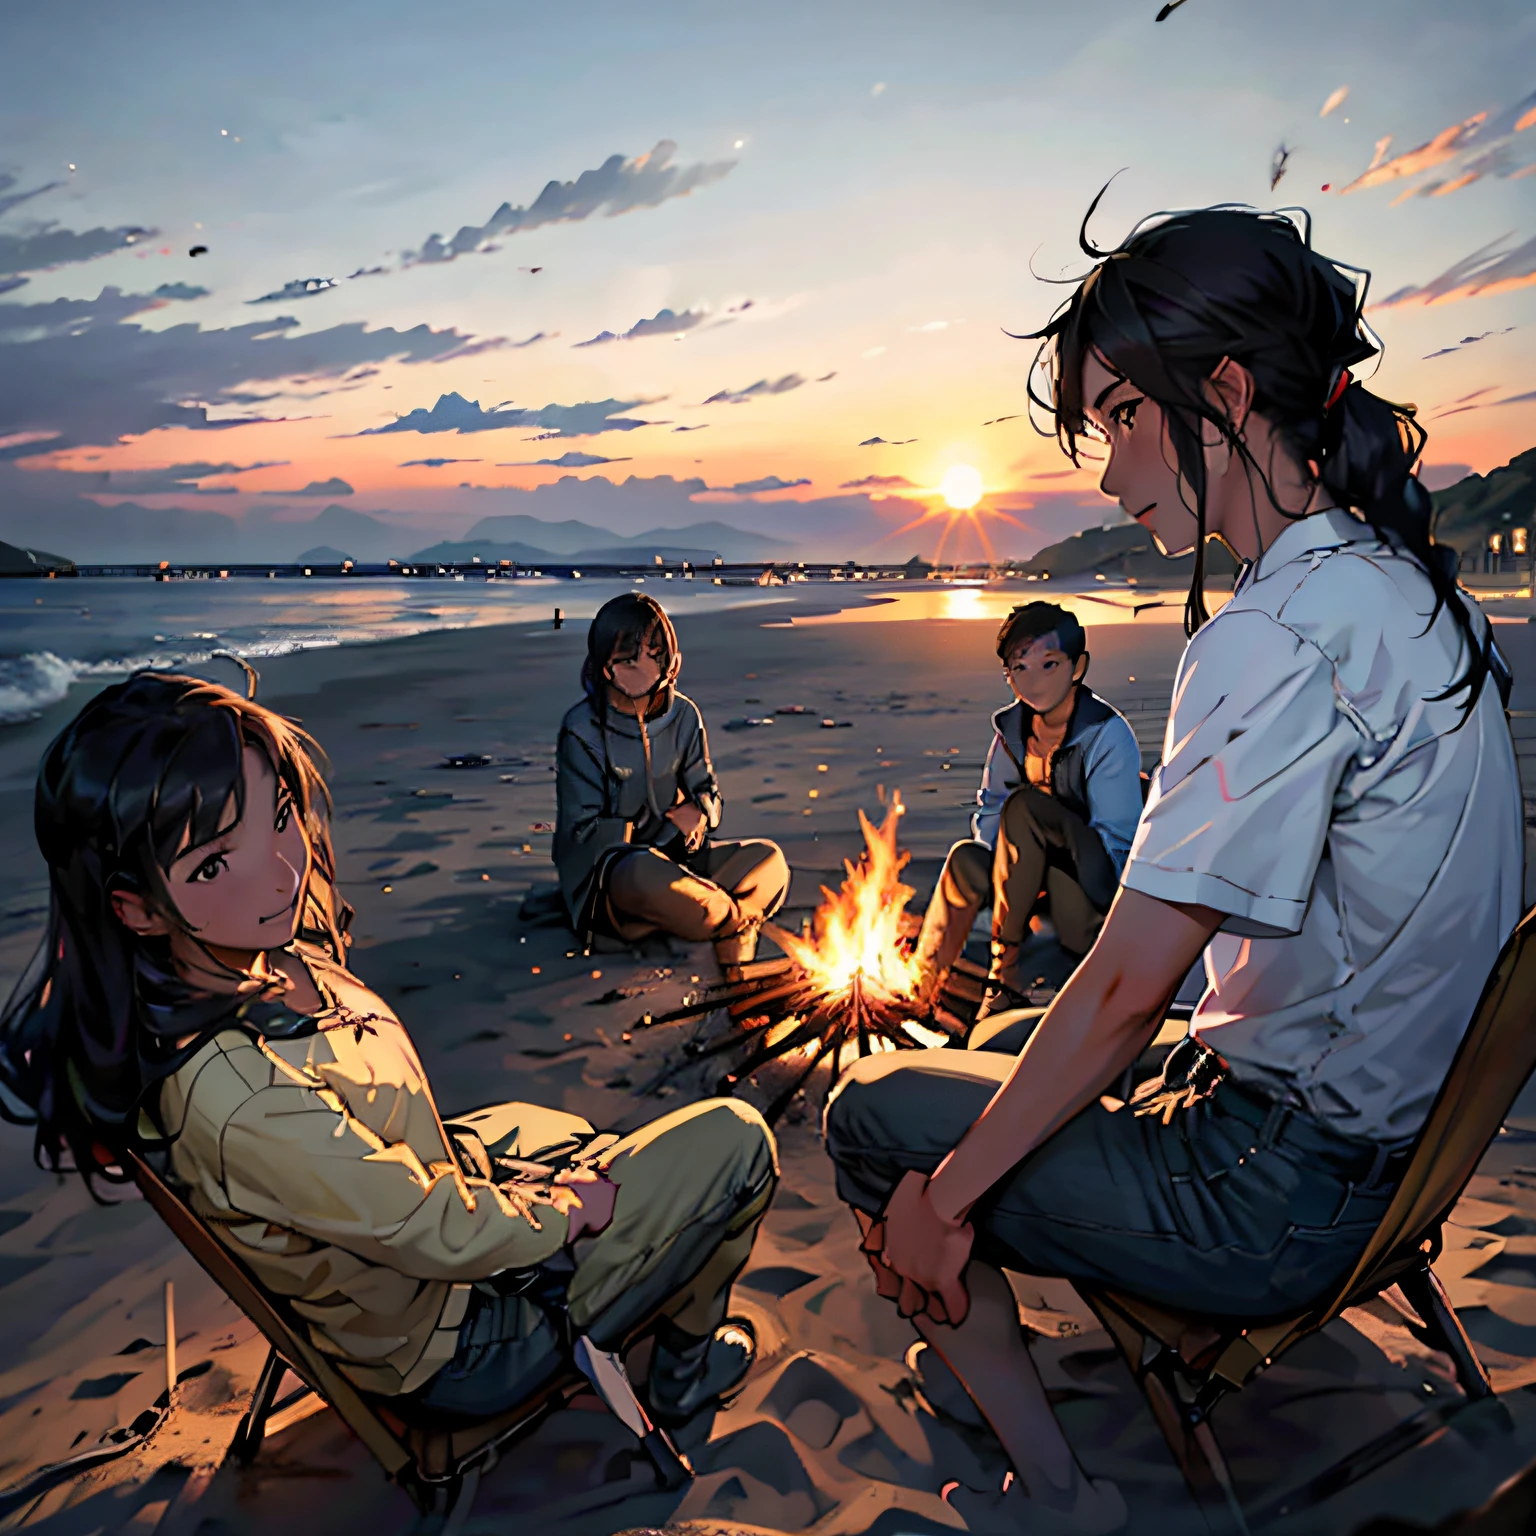 مجموعة من الأصدقاء يحيطون بنار المخيم بجانب البحر，استمتع بمحادثة جيدة عند غروب الشمس